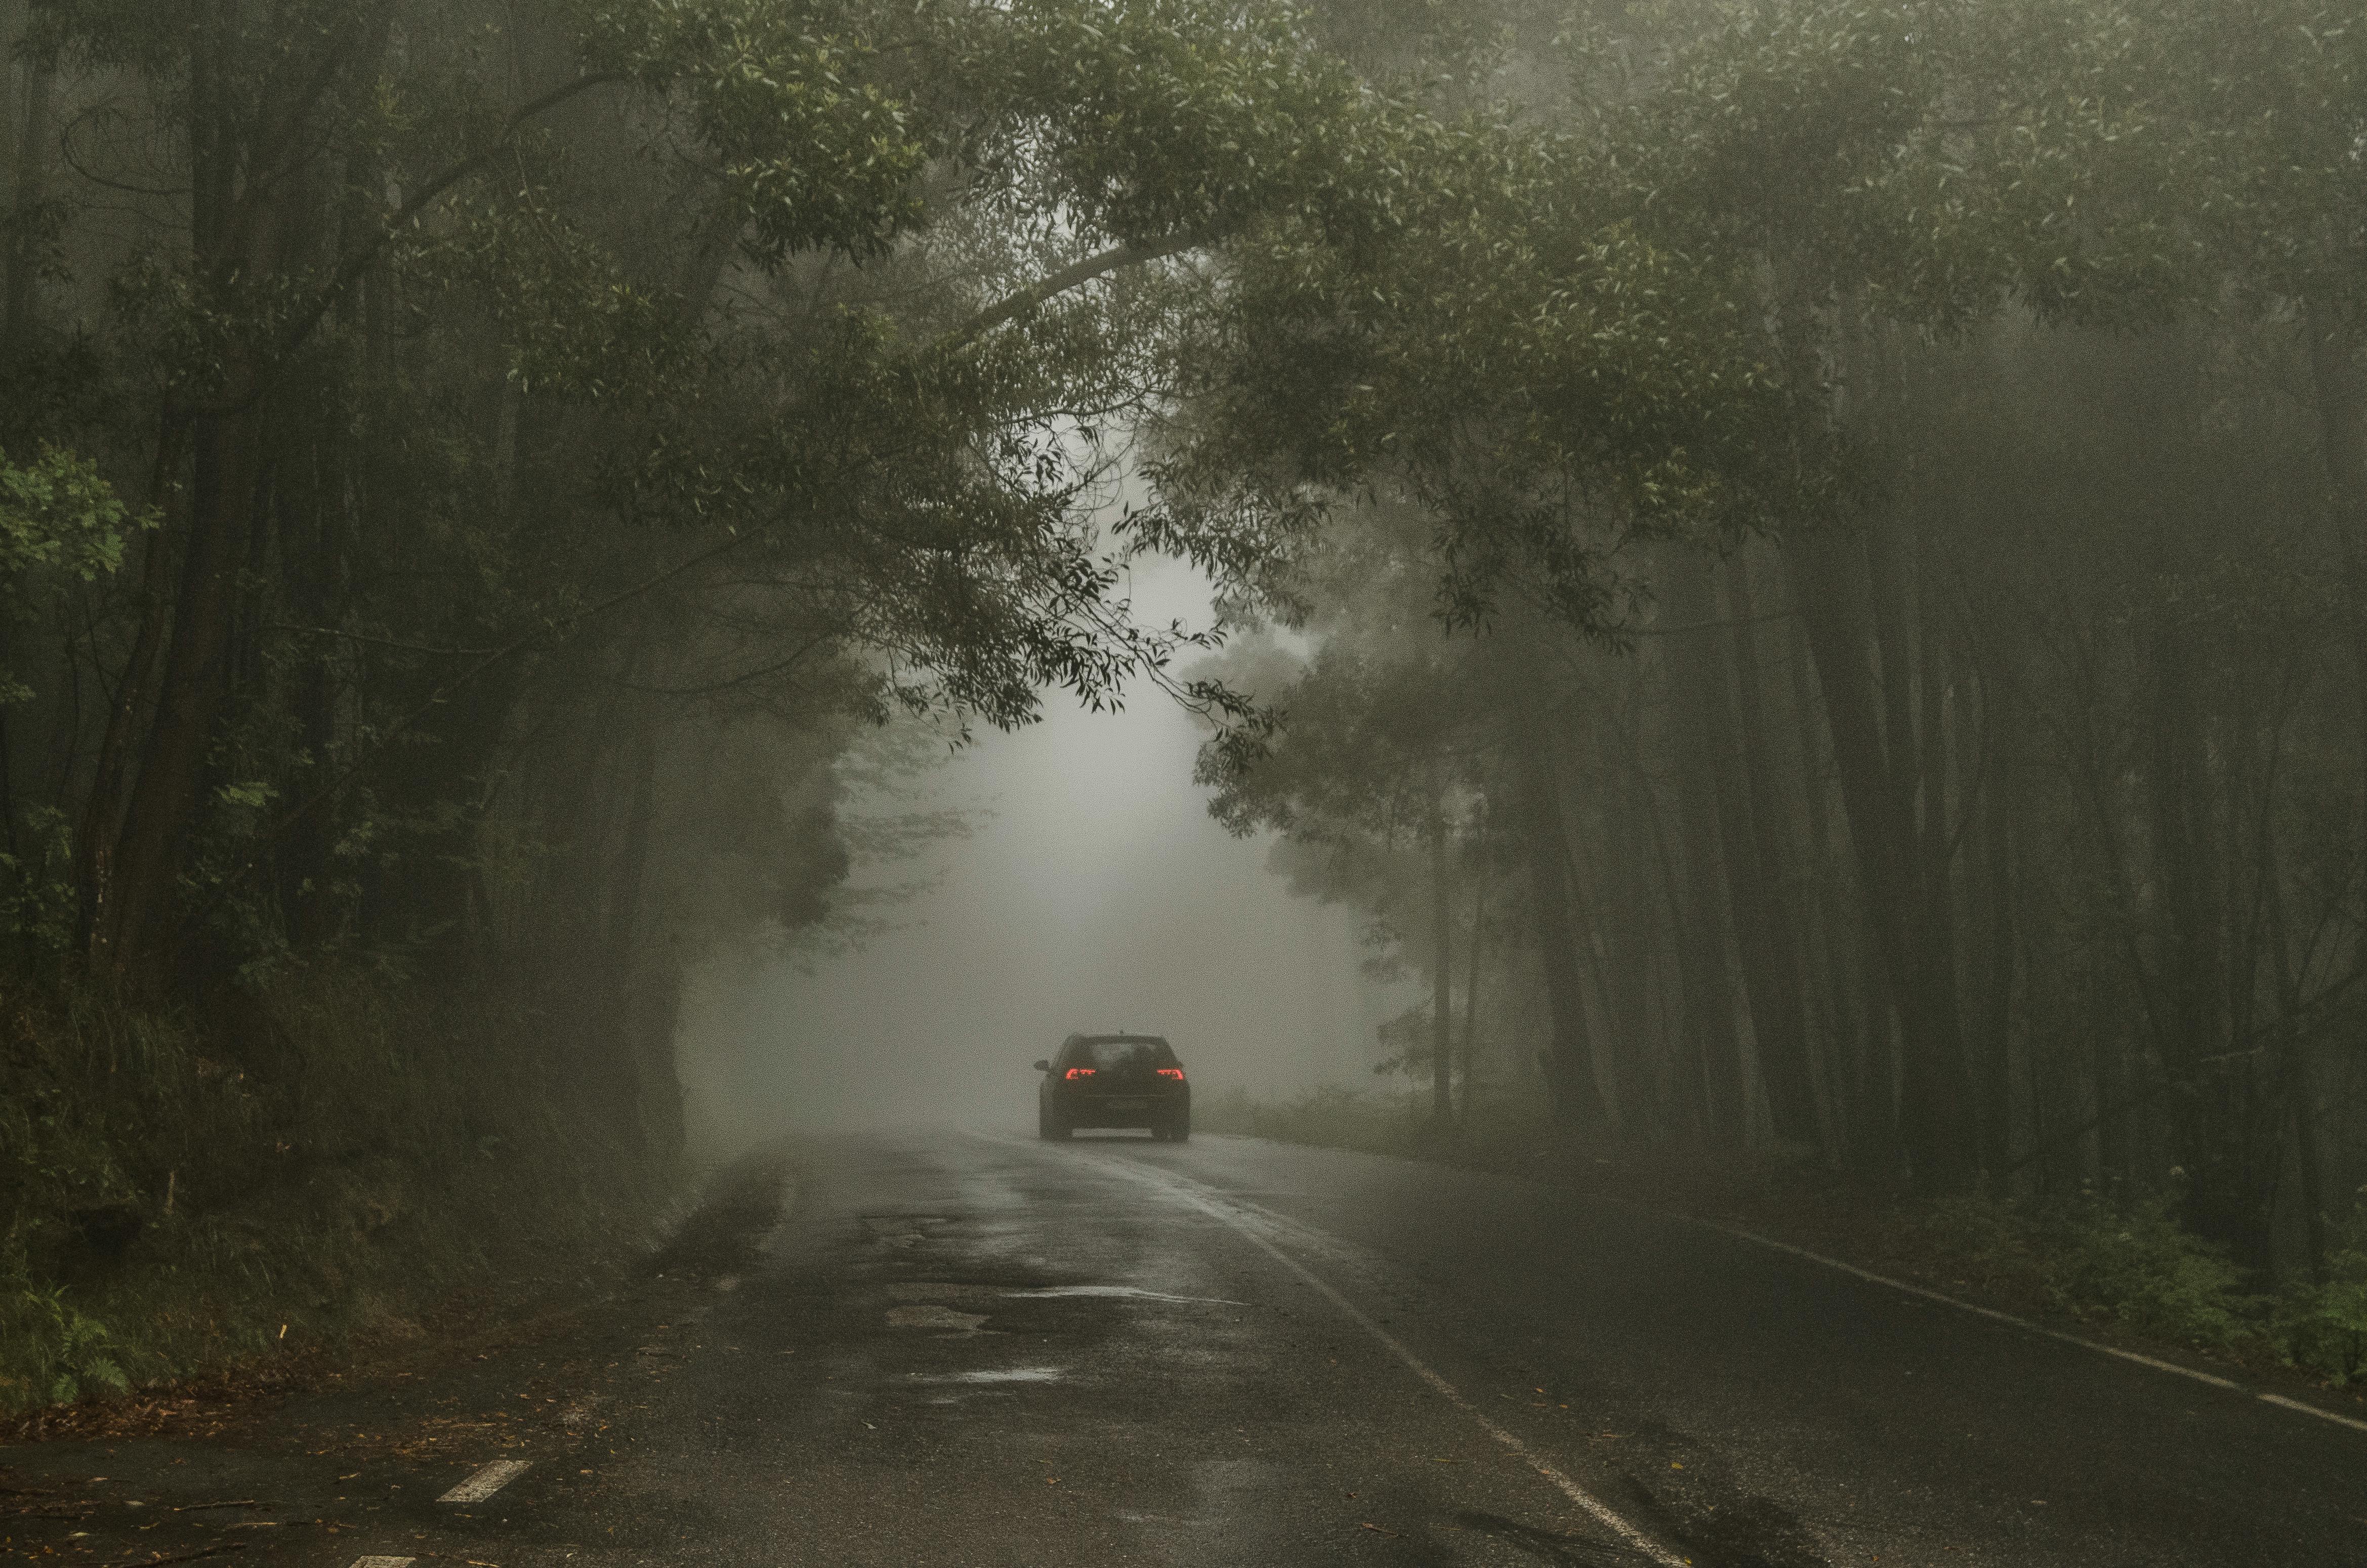 Autofahrt durch den stürmischen Wald | Quelle: Pexels